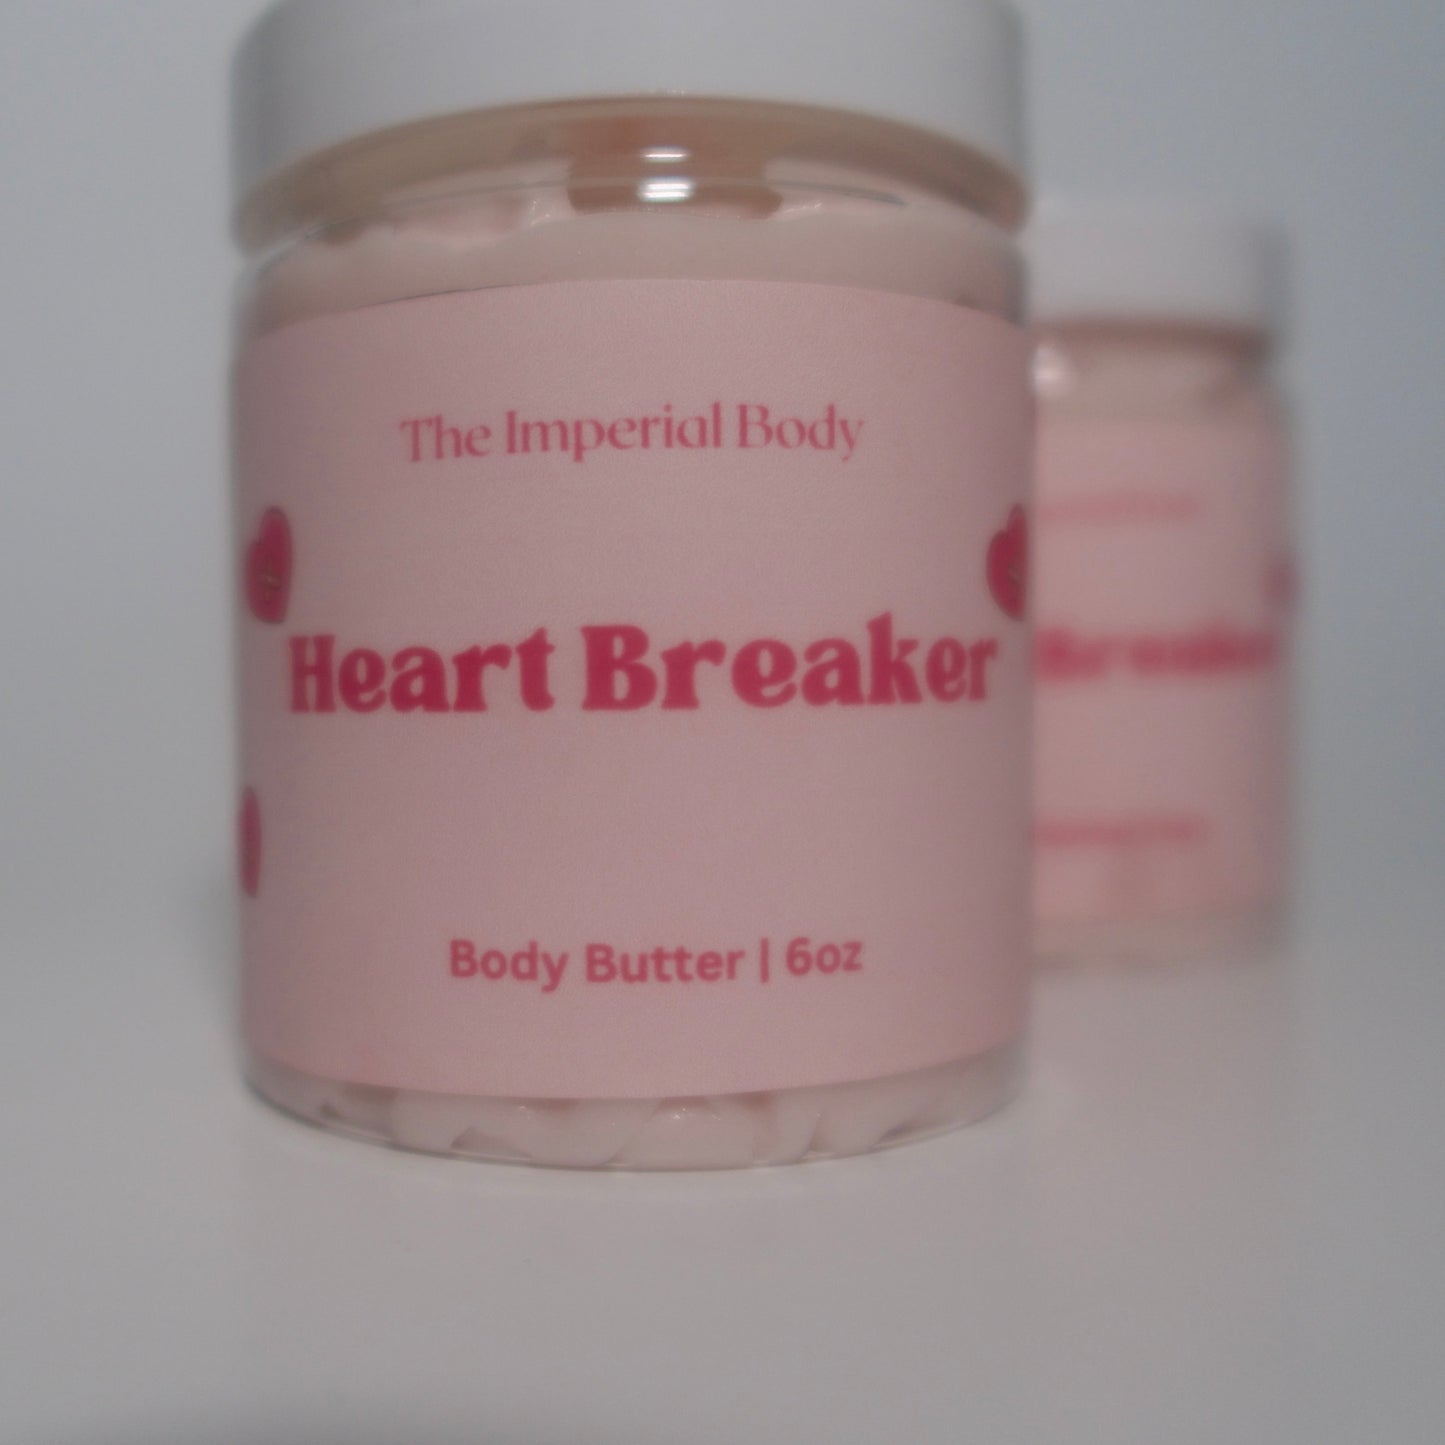 Heart Breaker Body Butter